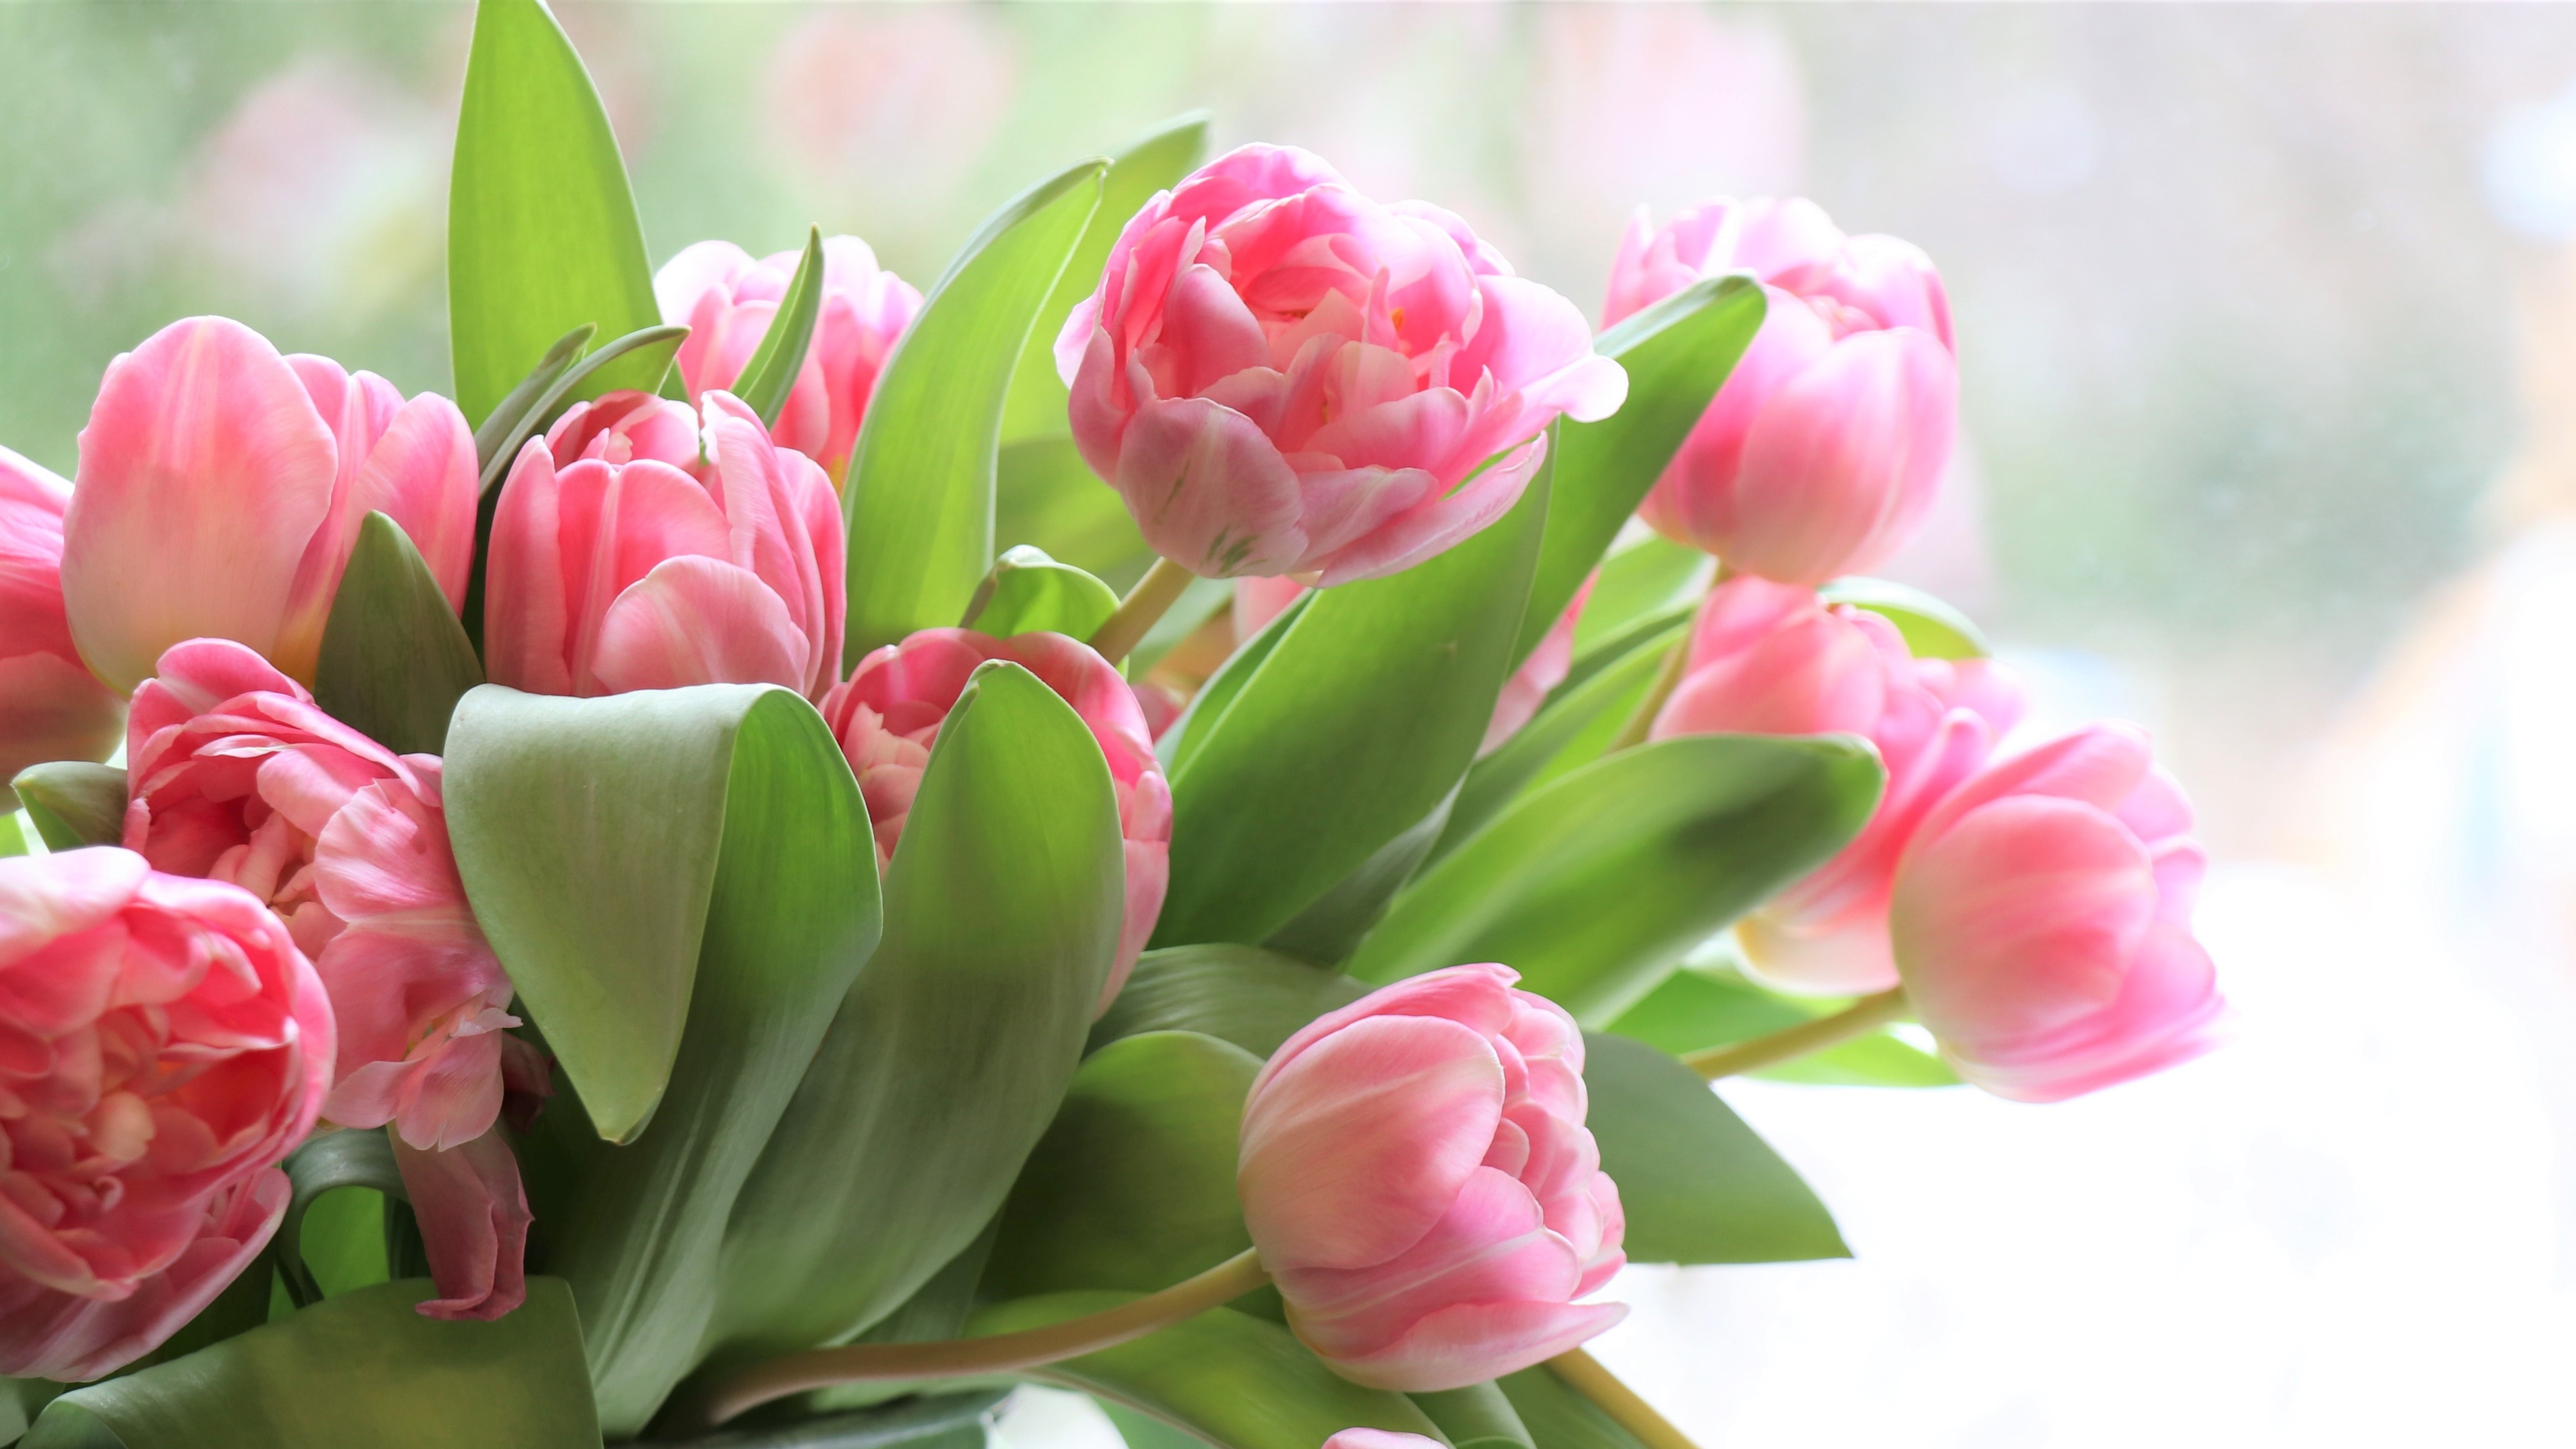 Обои на телефон красивые тюльпаны. Пионовидные тюльпаны. Розовые тюльпаны. Весенние цветы тюльпаны. Красивый весенний букет тюльпанов.